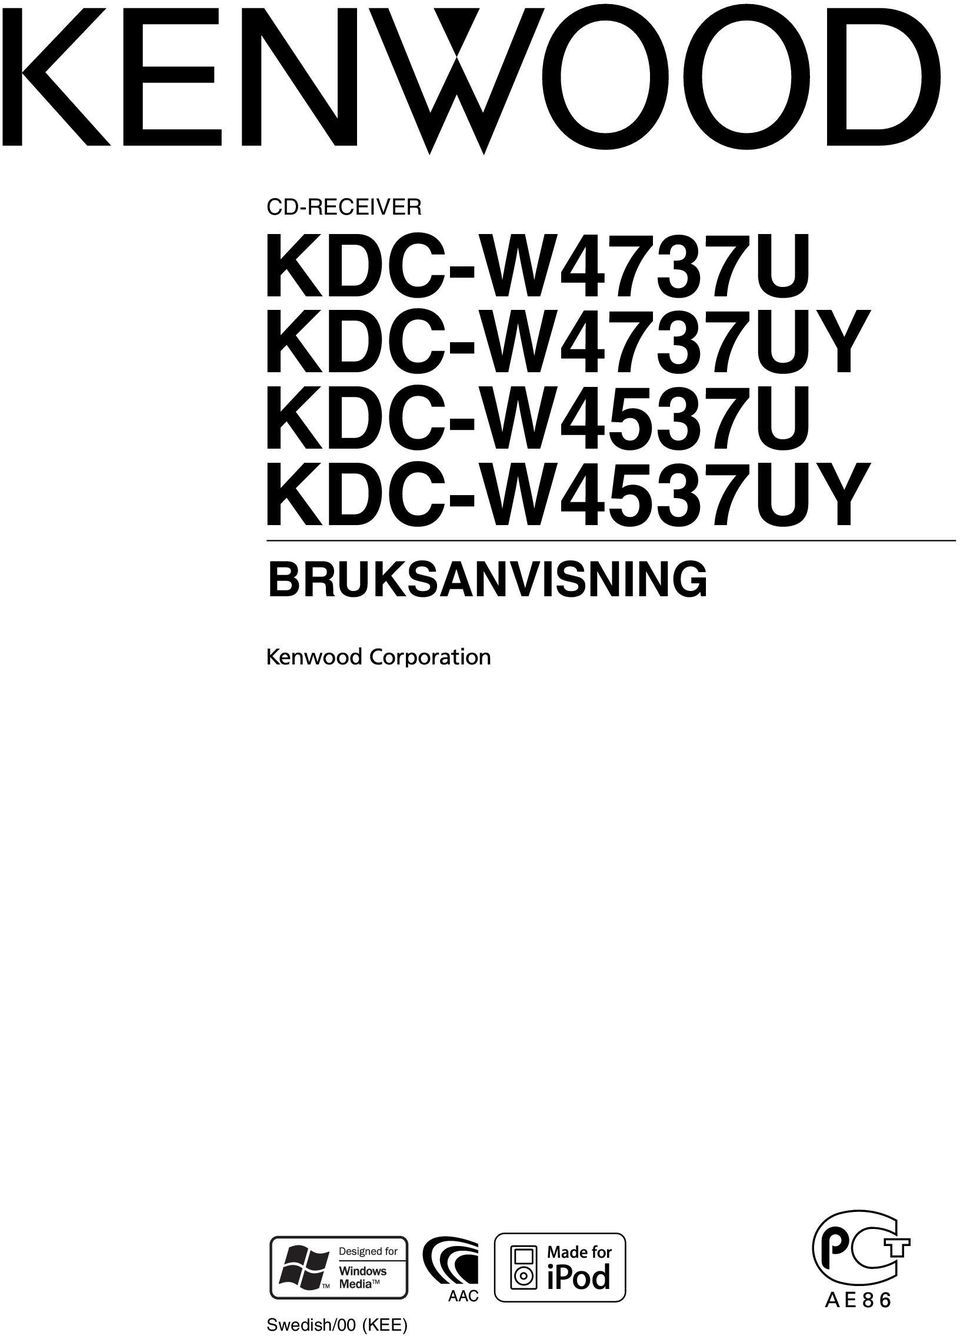 KDC-W4537UY